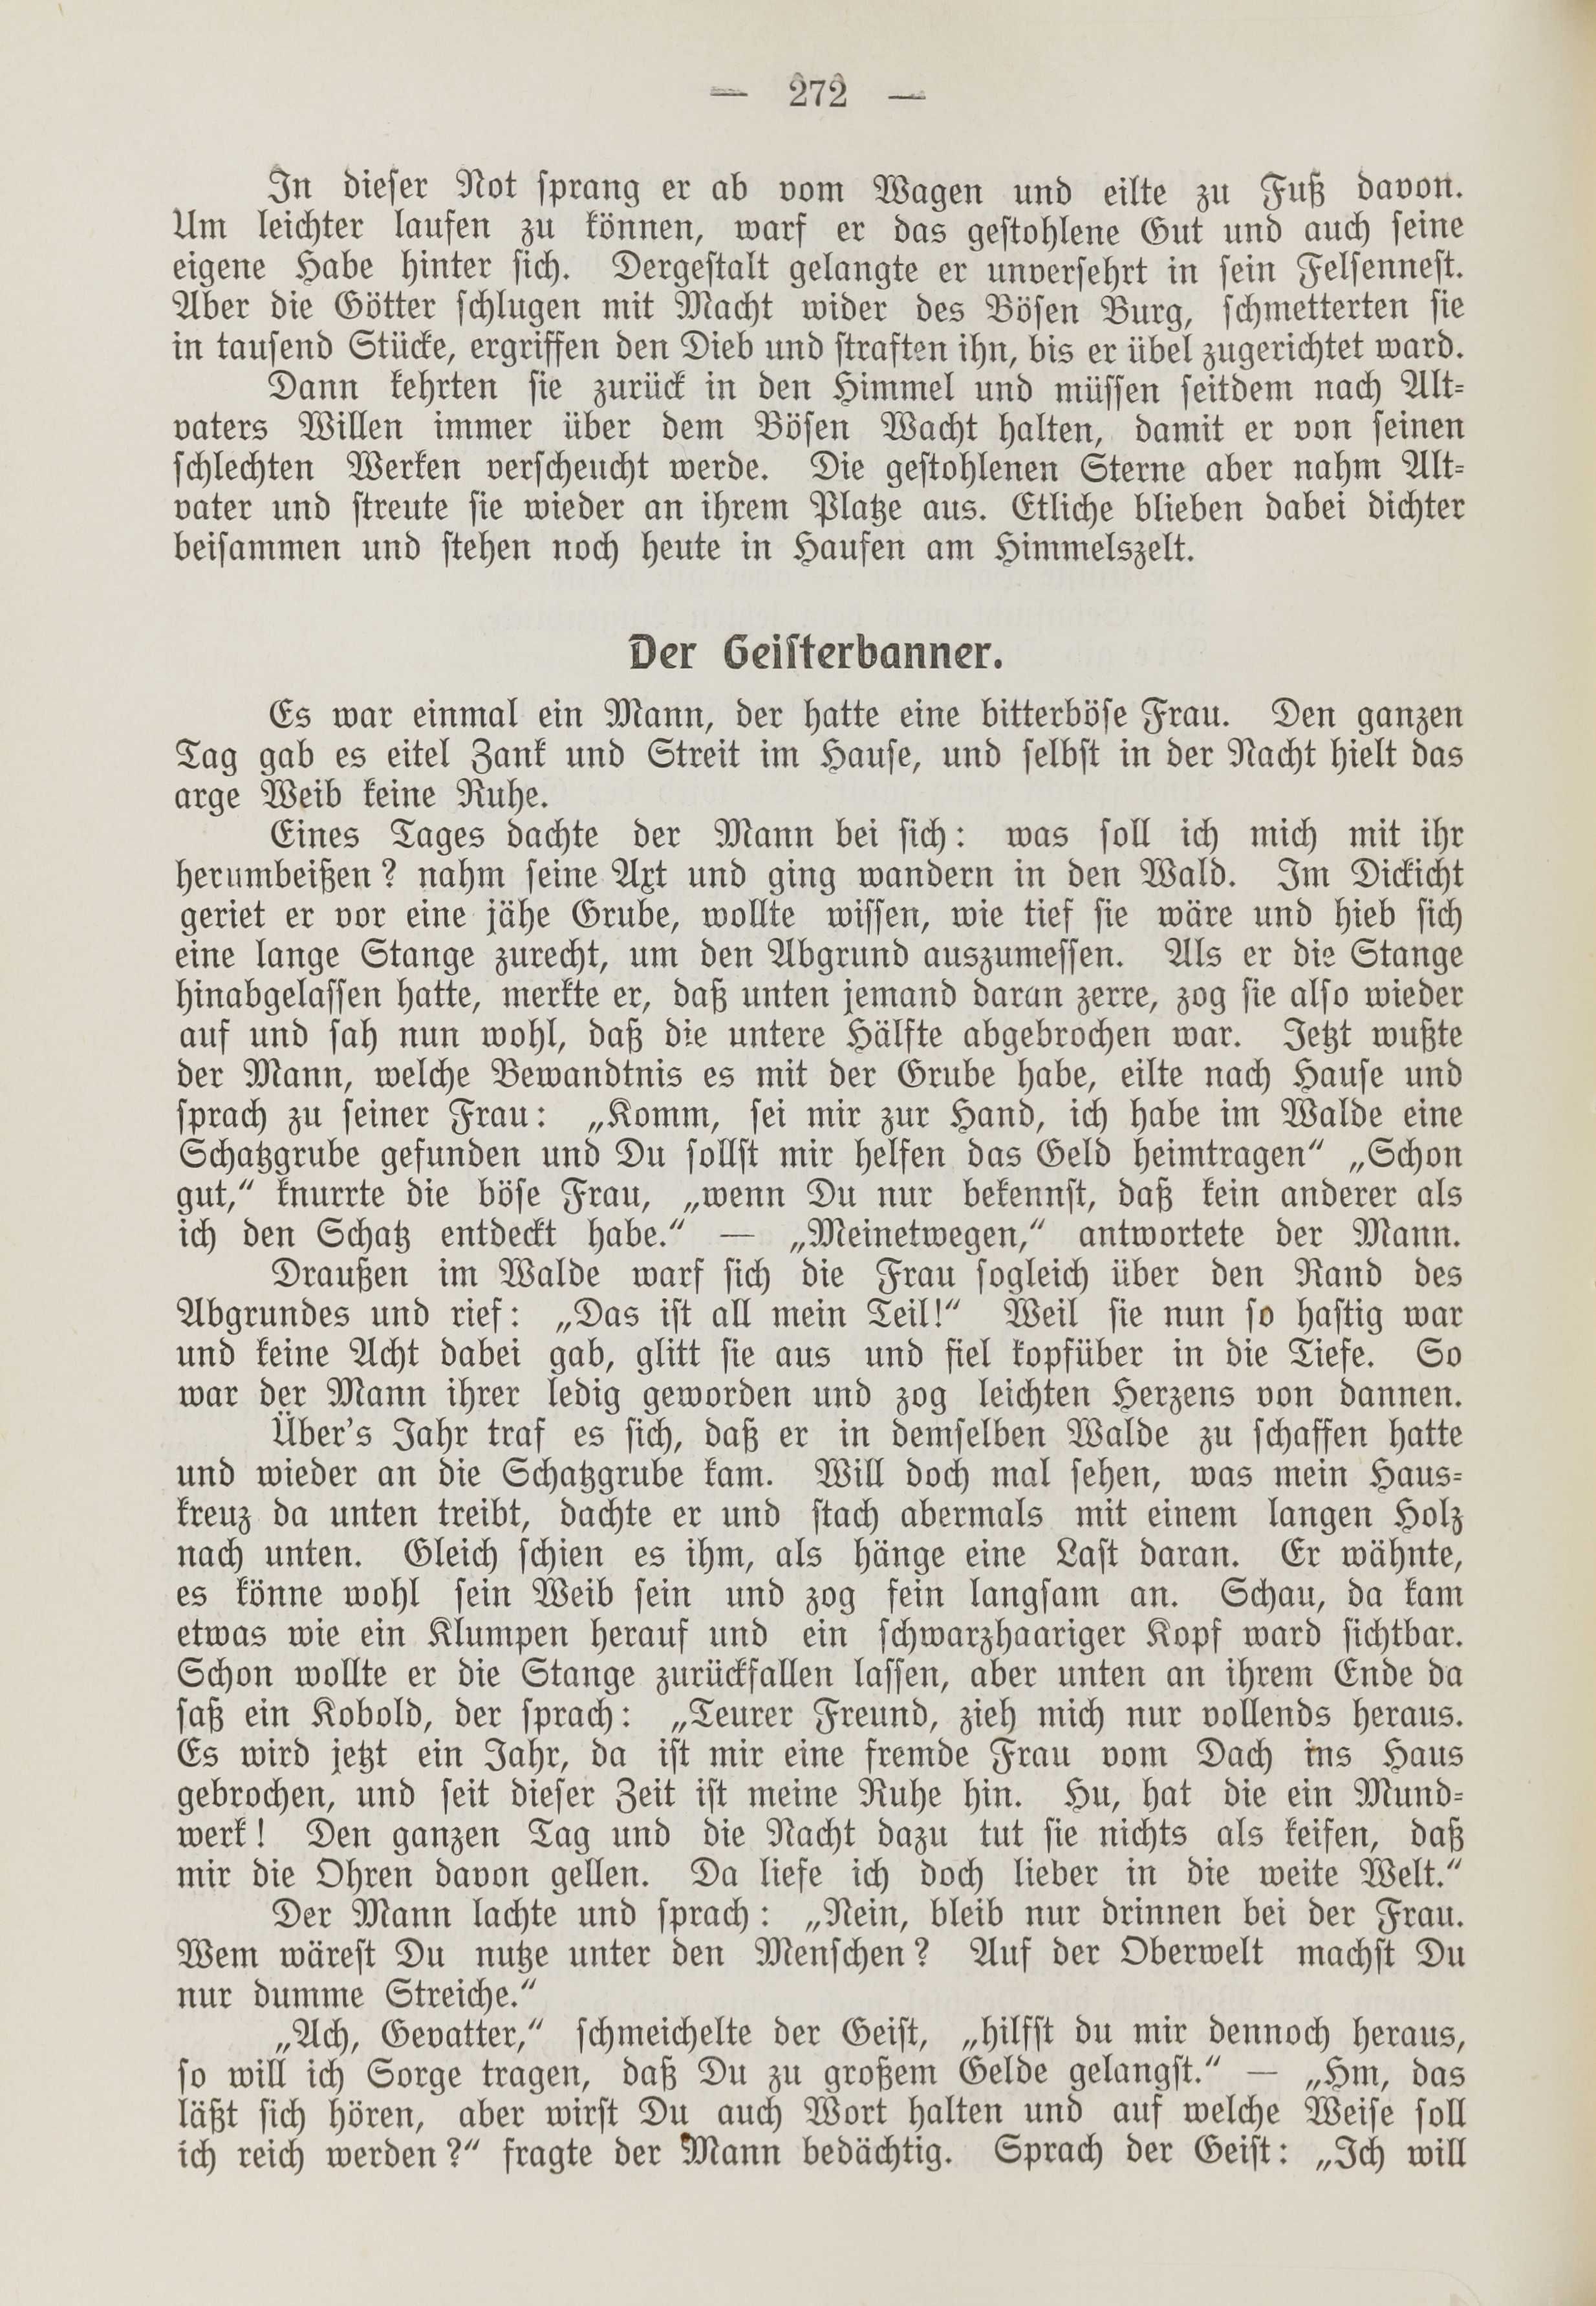 Deutsche Monatsschrift für Russland [1] (1912) | 280. (272) Main body of text